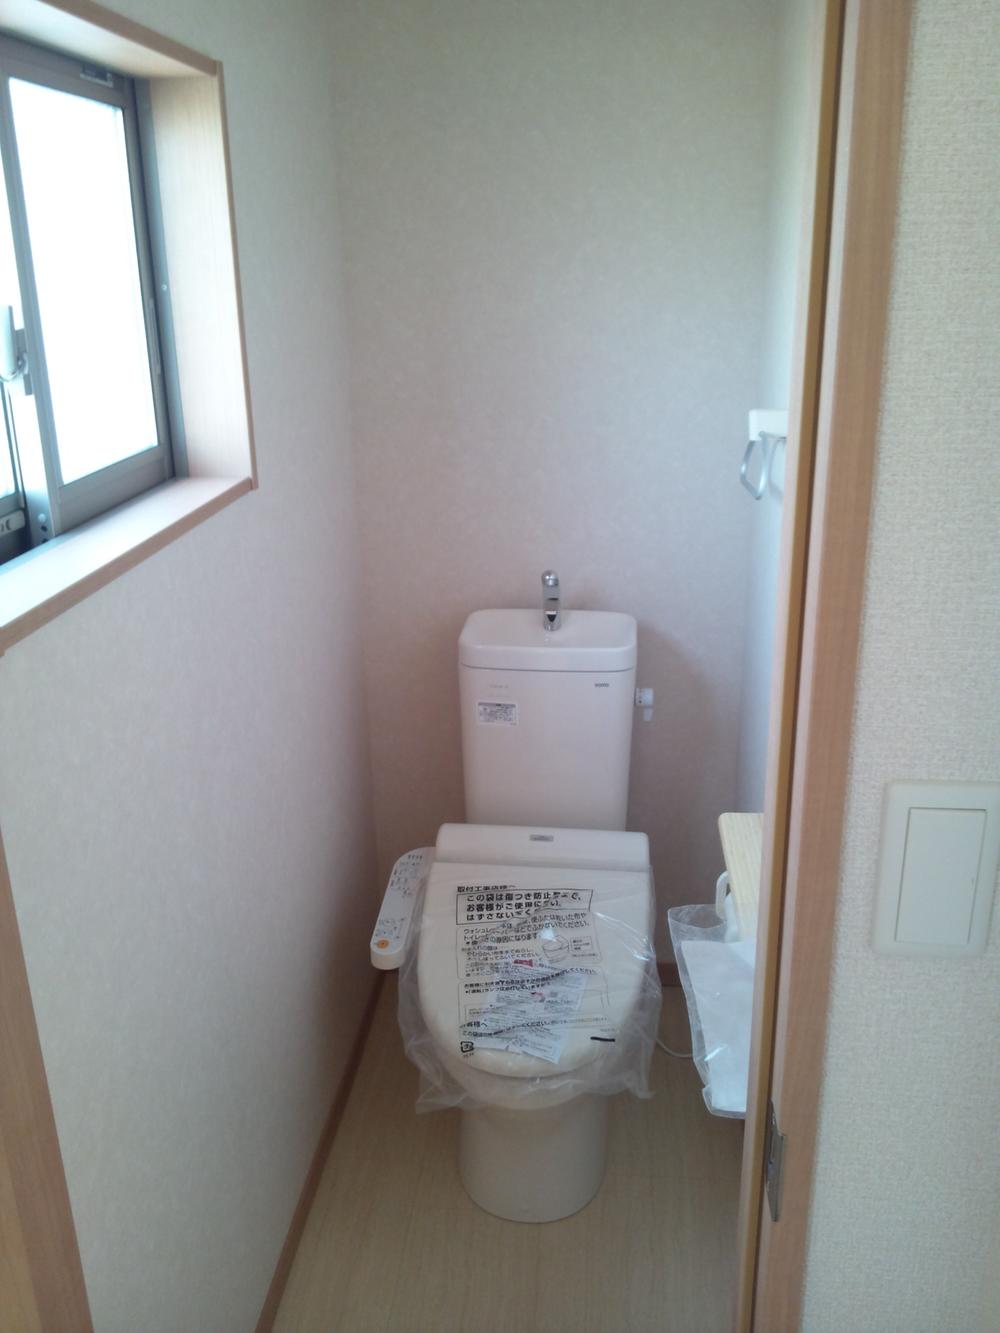 Toilet. Indoor (November 24, 2013) Shooting